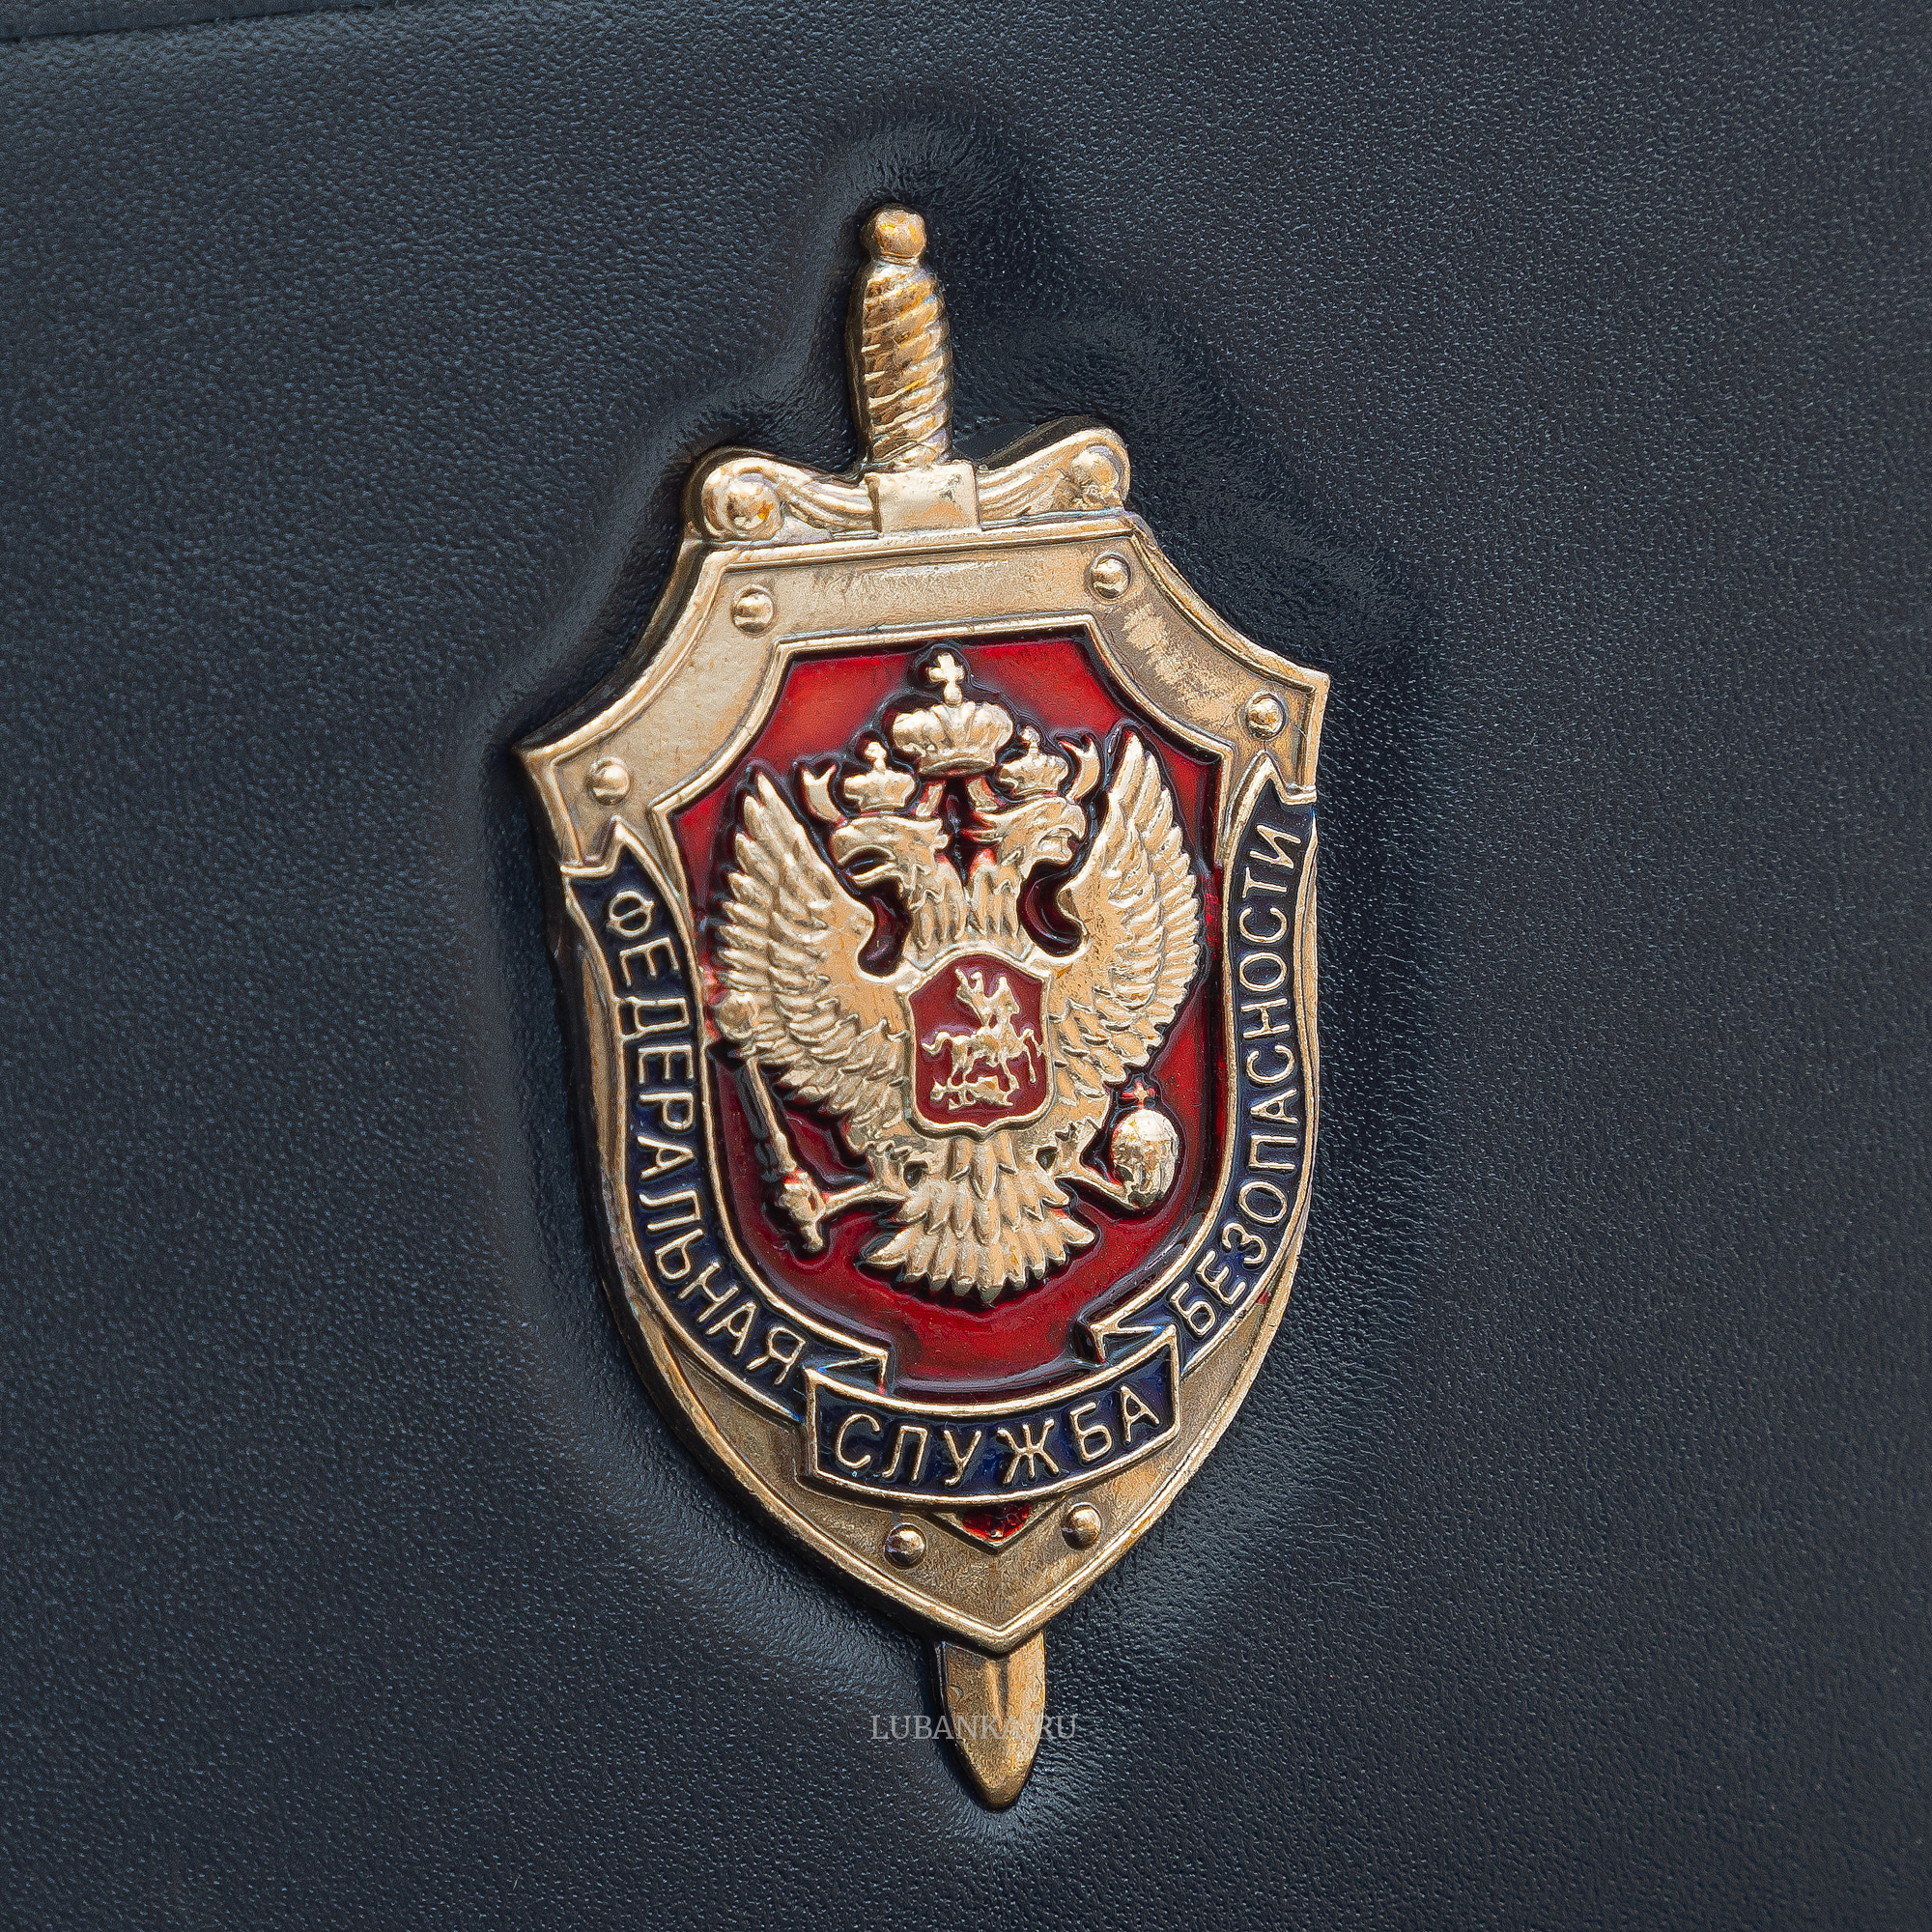 Обложка для удостоверения ФСБ с жетоном темно синяя без текста